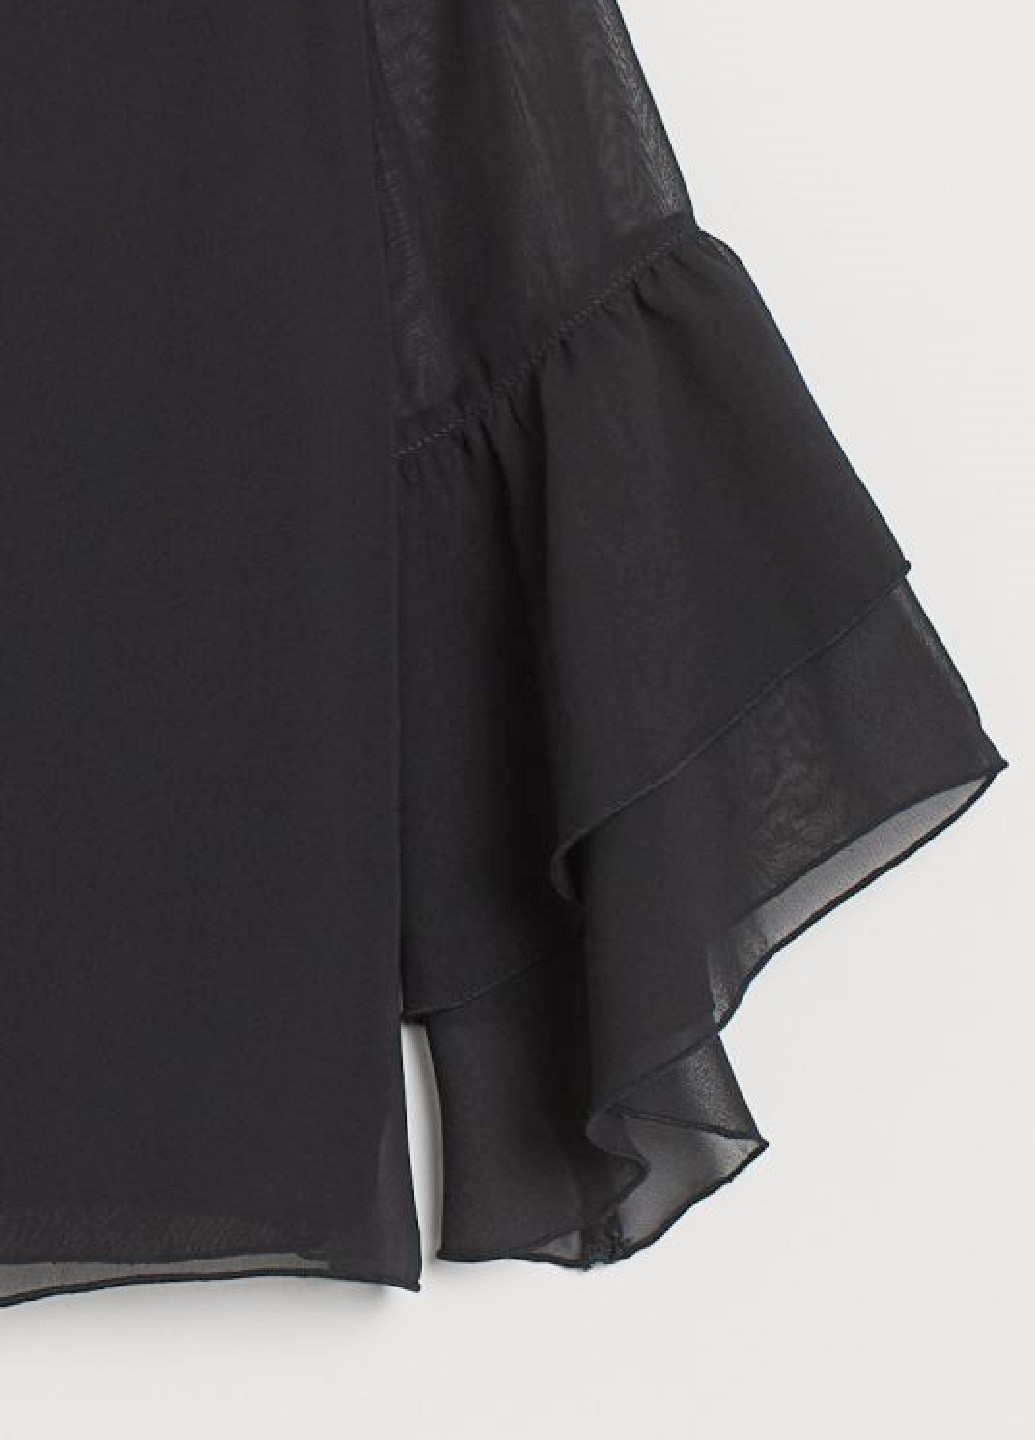 Черная однотонная блузка H&M летняя